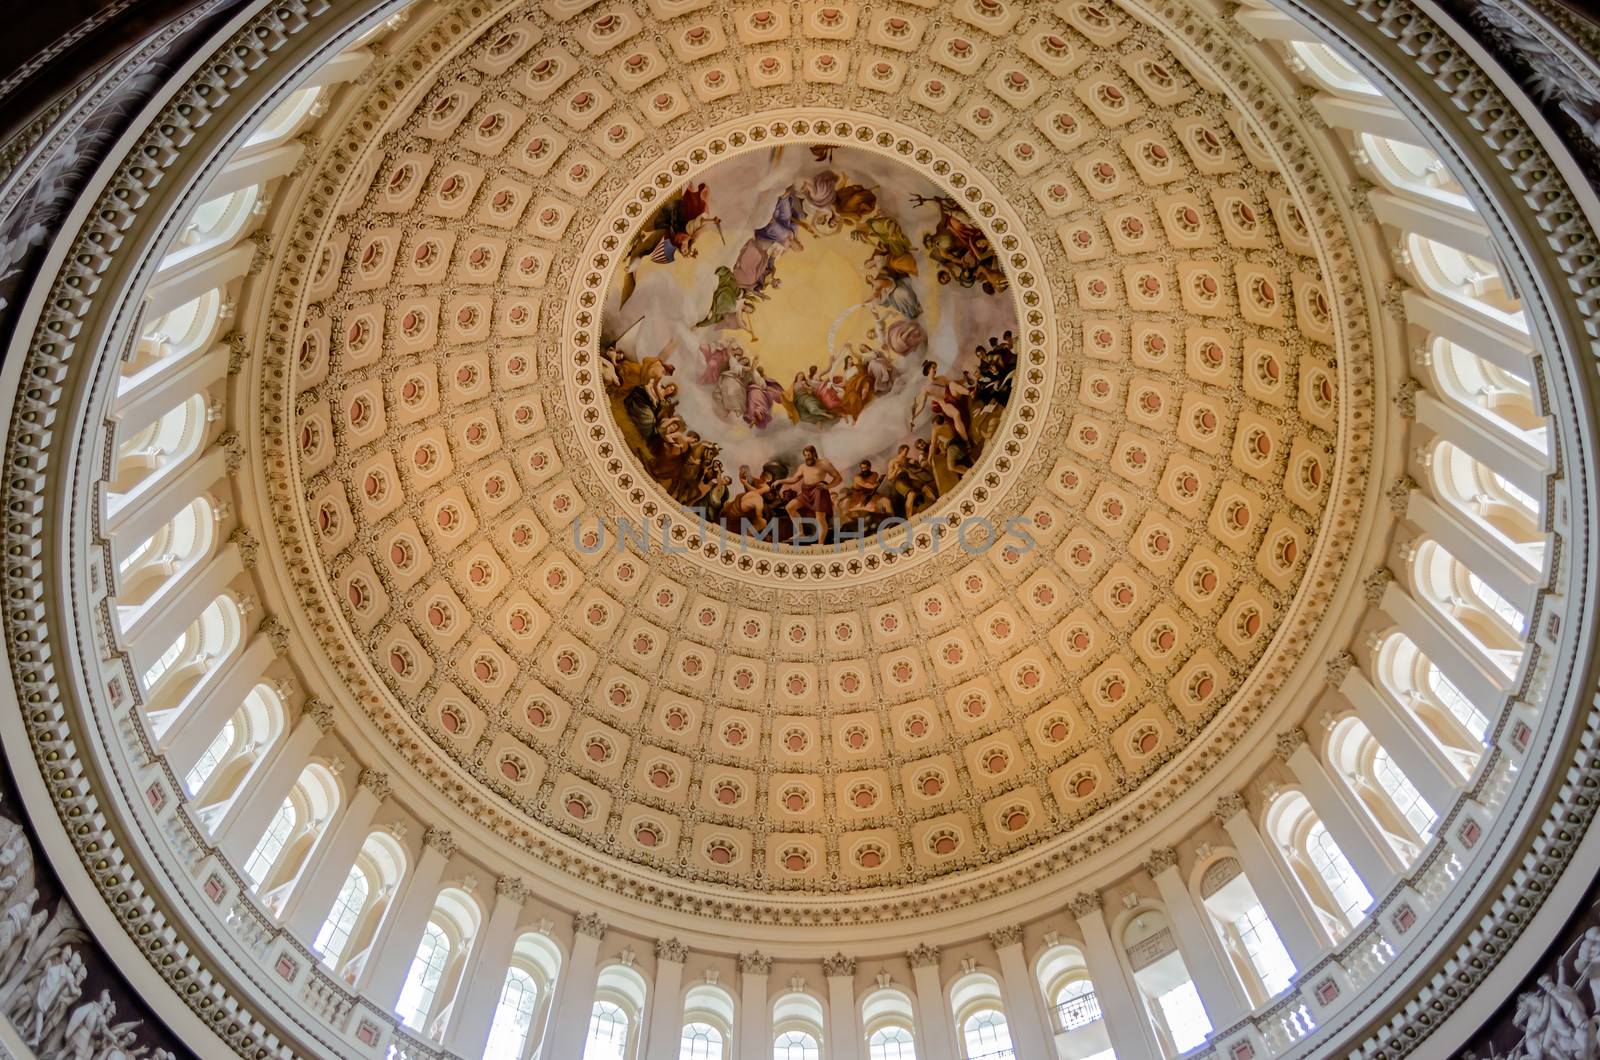 US Capitol Rotunda by marcorubino